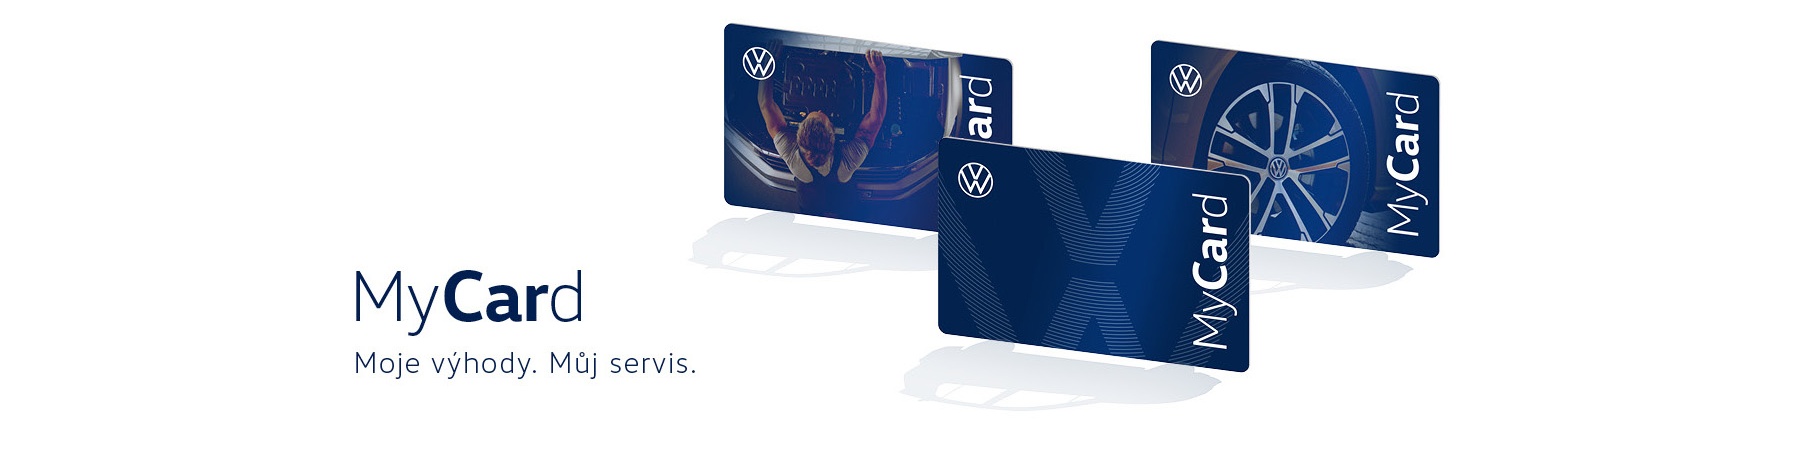 VW MyCard